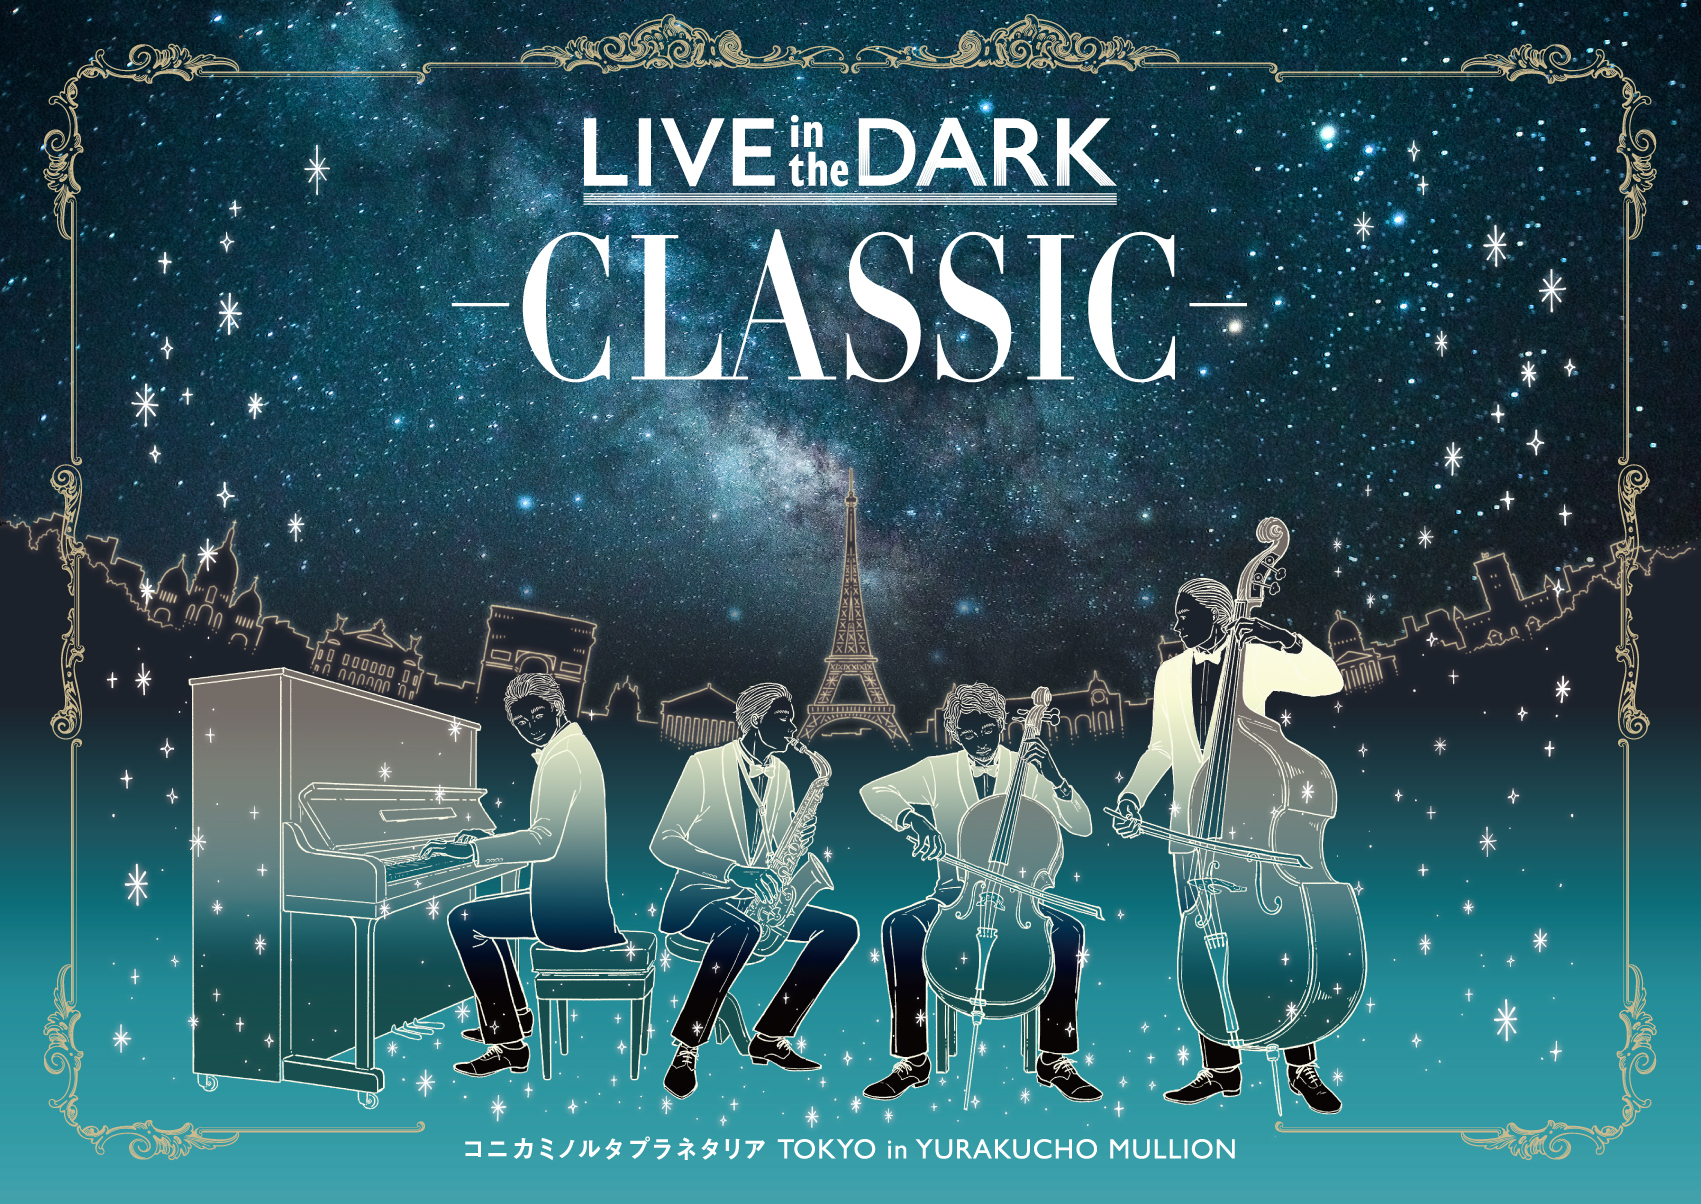 クラシックの生演奏と満天の星々を楽しむプラネタリウムライブ Live In The Dark Classic インディー